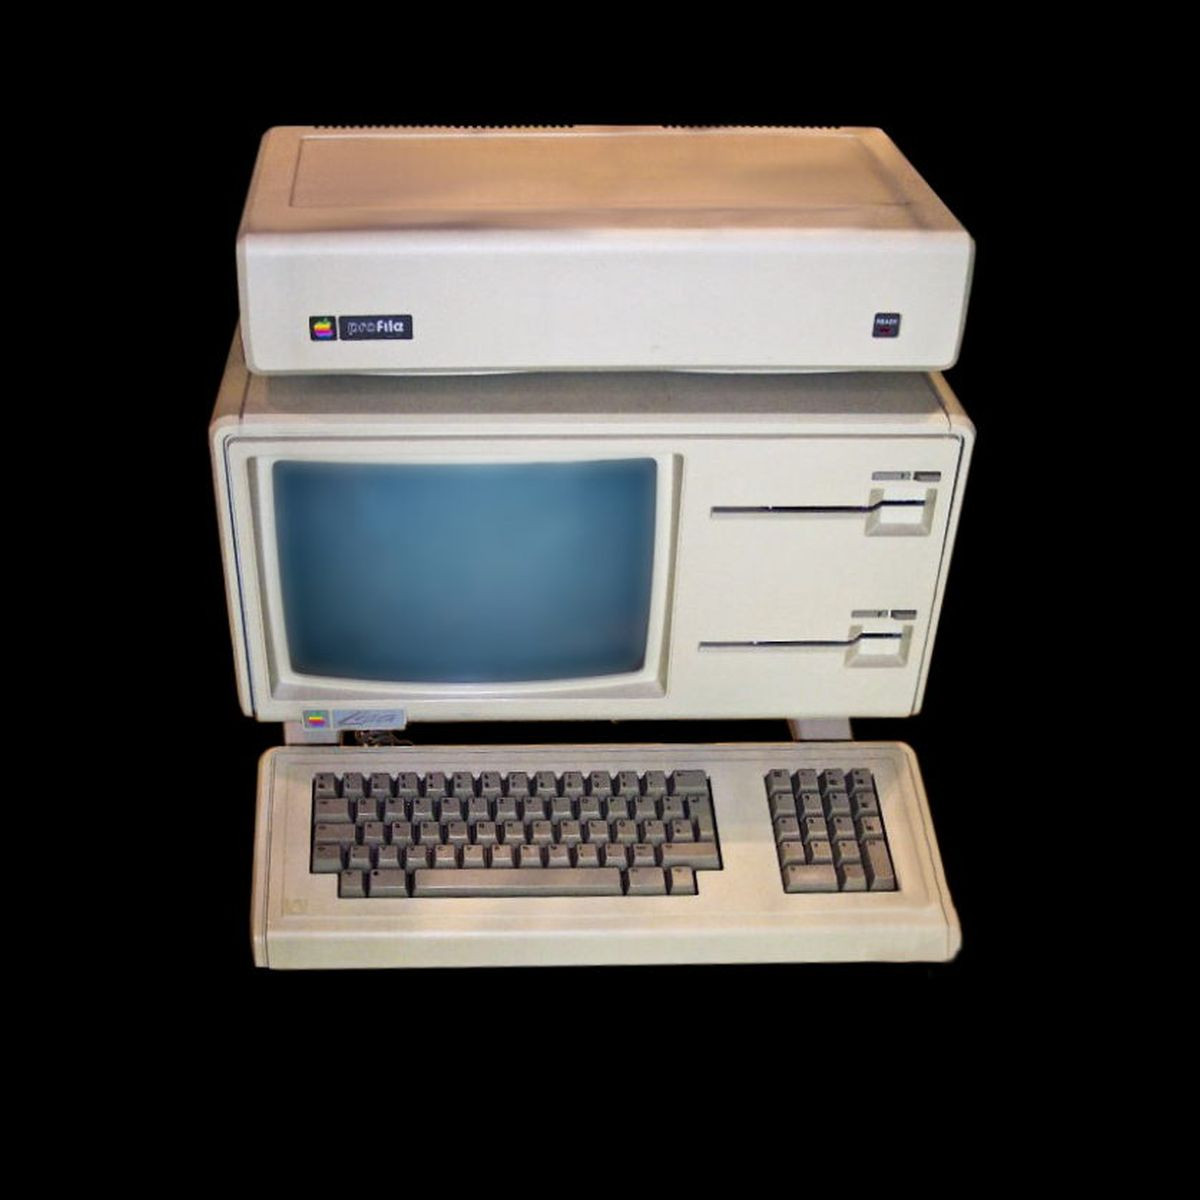 Vo svojich začiatkoch sa aj velikán Jobs stretol s neúspechom. Za zmienku určite stojí Apple Lisa. Osobný počítač, ktorý mal byť revolúciou. Pre vysokú cenu však v obchodoch pohorel. Prepadákom bol tiež počítač Apple III, na ktorom sa už nepodieľal Steve Wozniak.